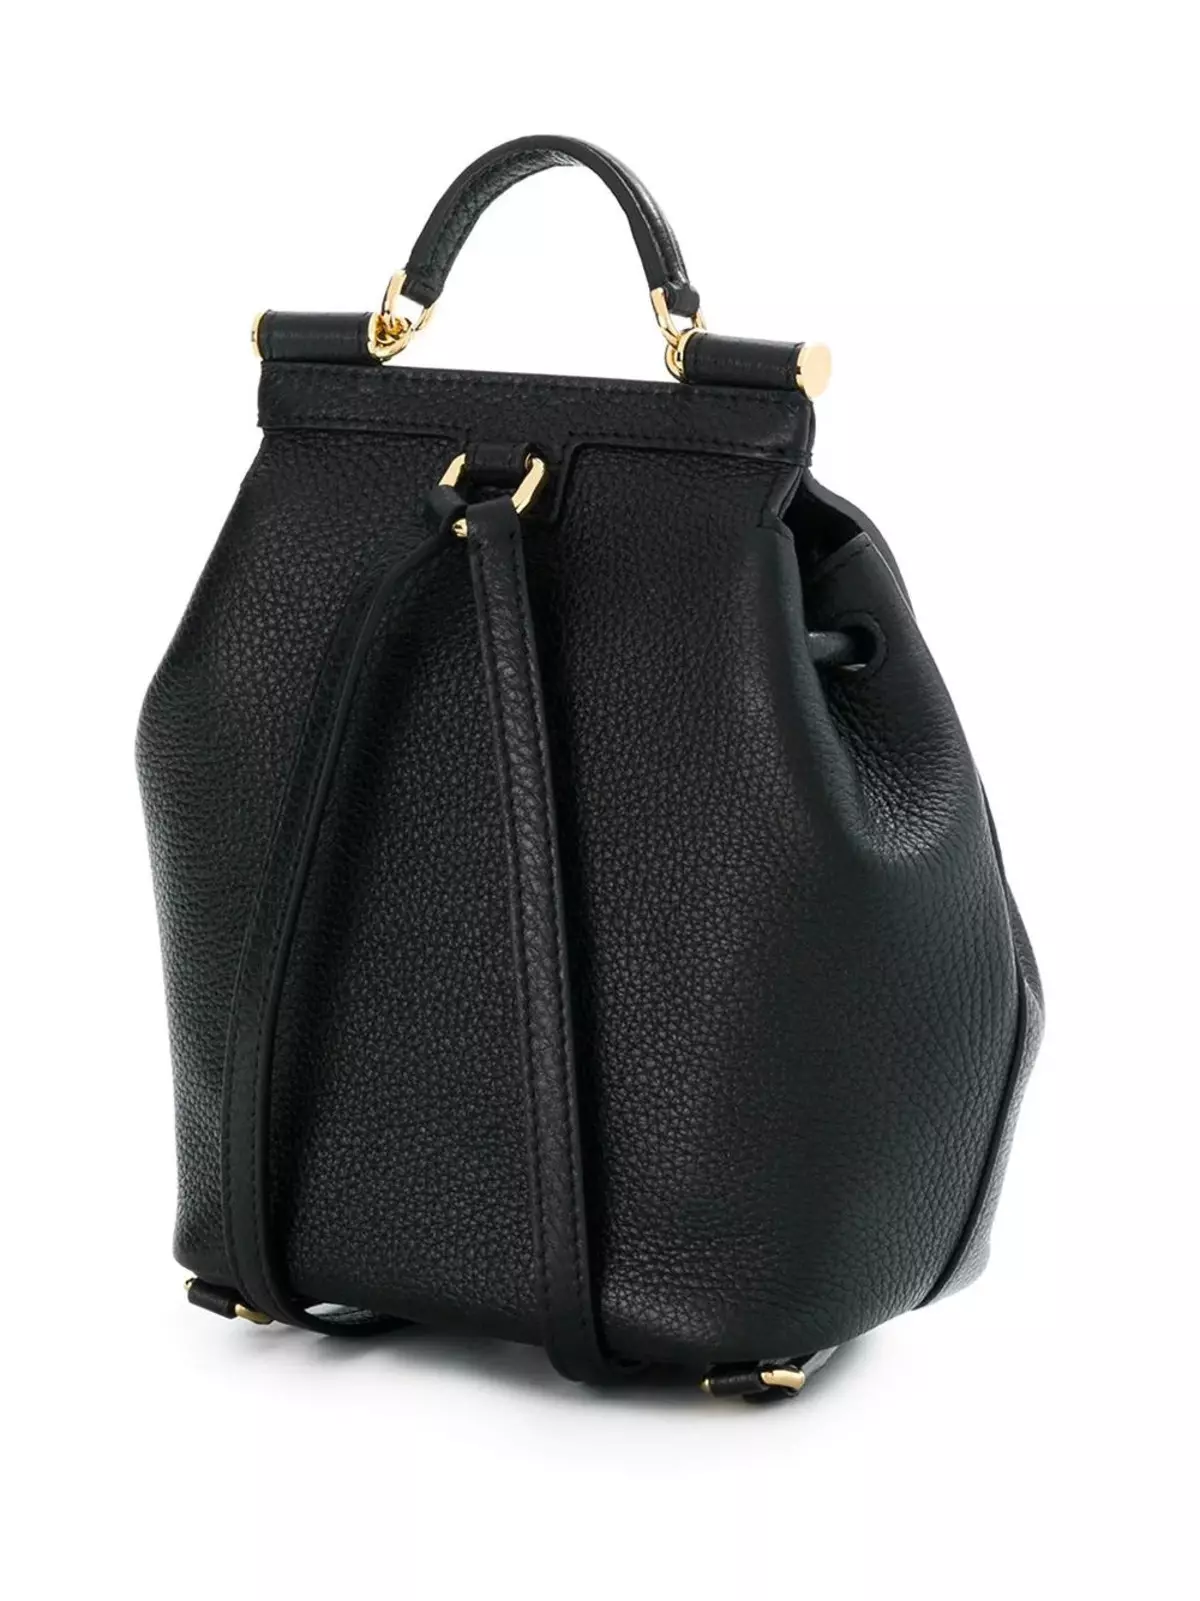 Dolce & Gabbana seljakotid: Naine ja meeste, must ja punane, nahast seljakottide kotid ja muud mudelid. Kuidas eristada originaali koopiast? 2559_19